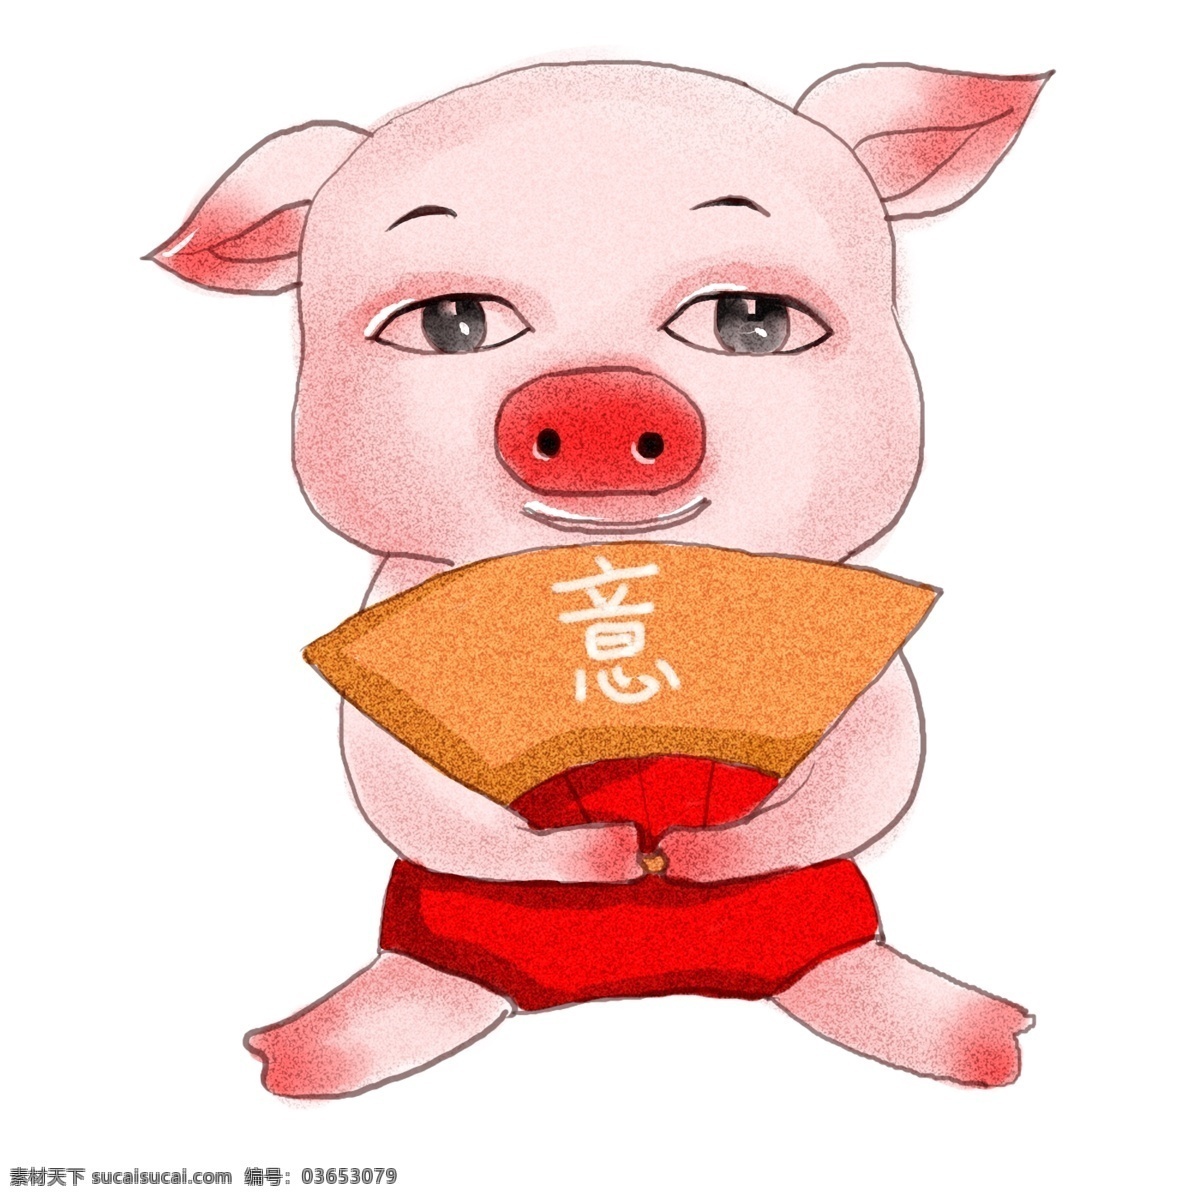 2019 生肖 猪 猪年 如意 意 原创 商用 元素 可爱 生肖猪 手绘 板绘 水彩